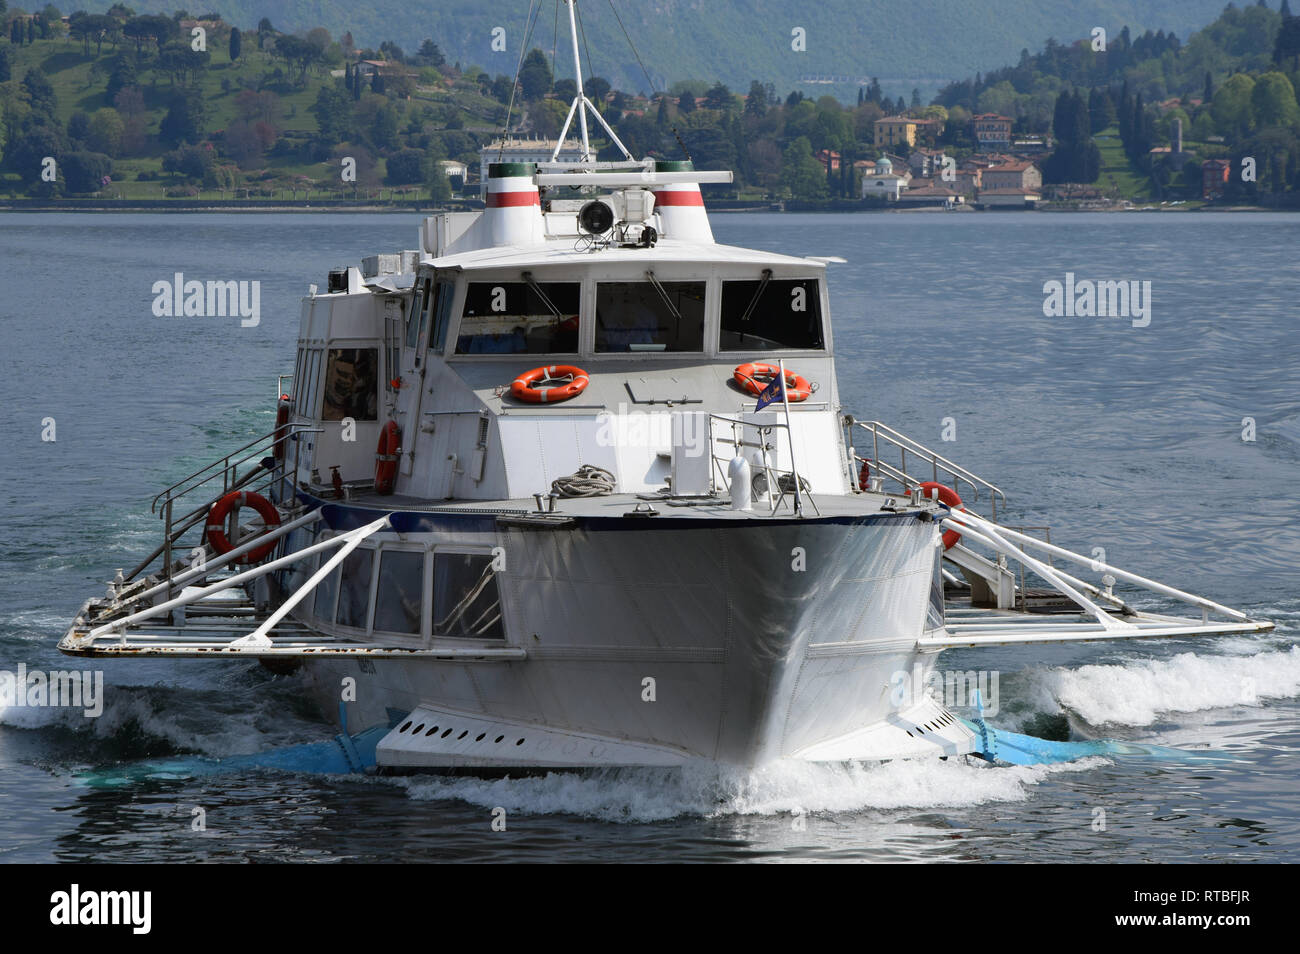 Comer See, Lombardei, Italien - 12 April 2017: tragflügelboot am Comer See. Die Yacht bietet eine schnelle Service über den malerischen See. Stockfoto